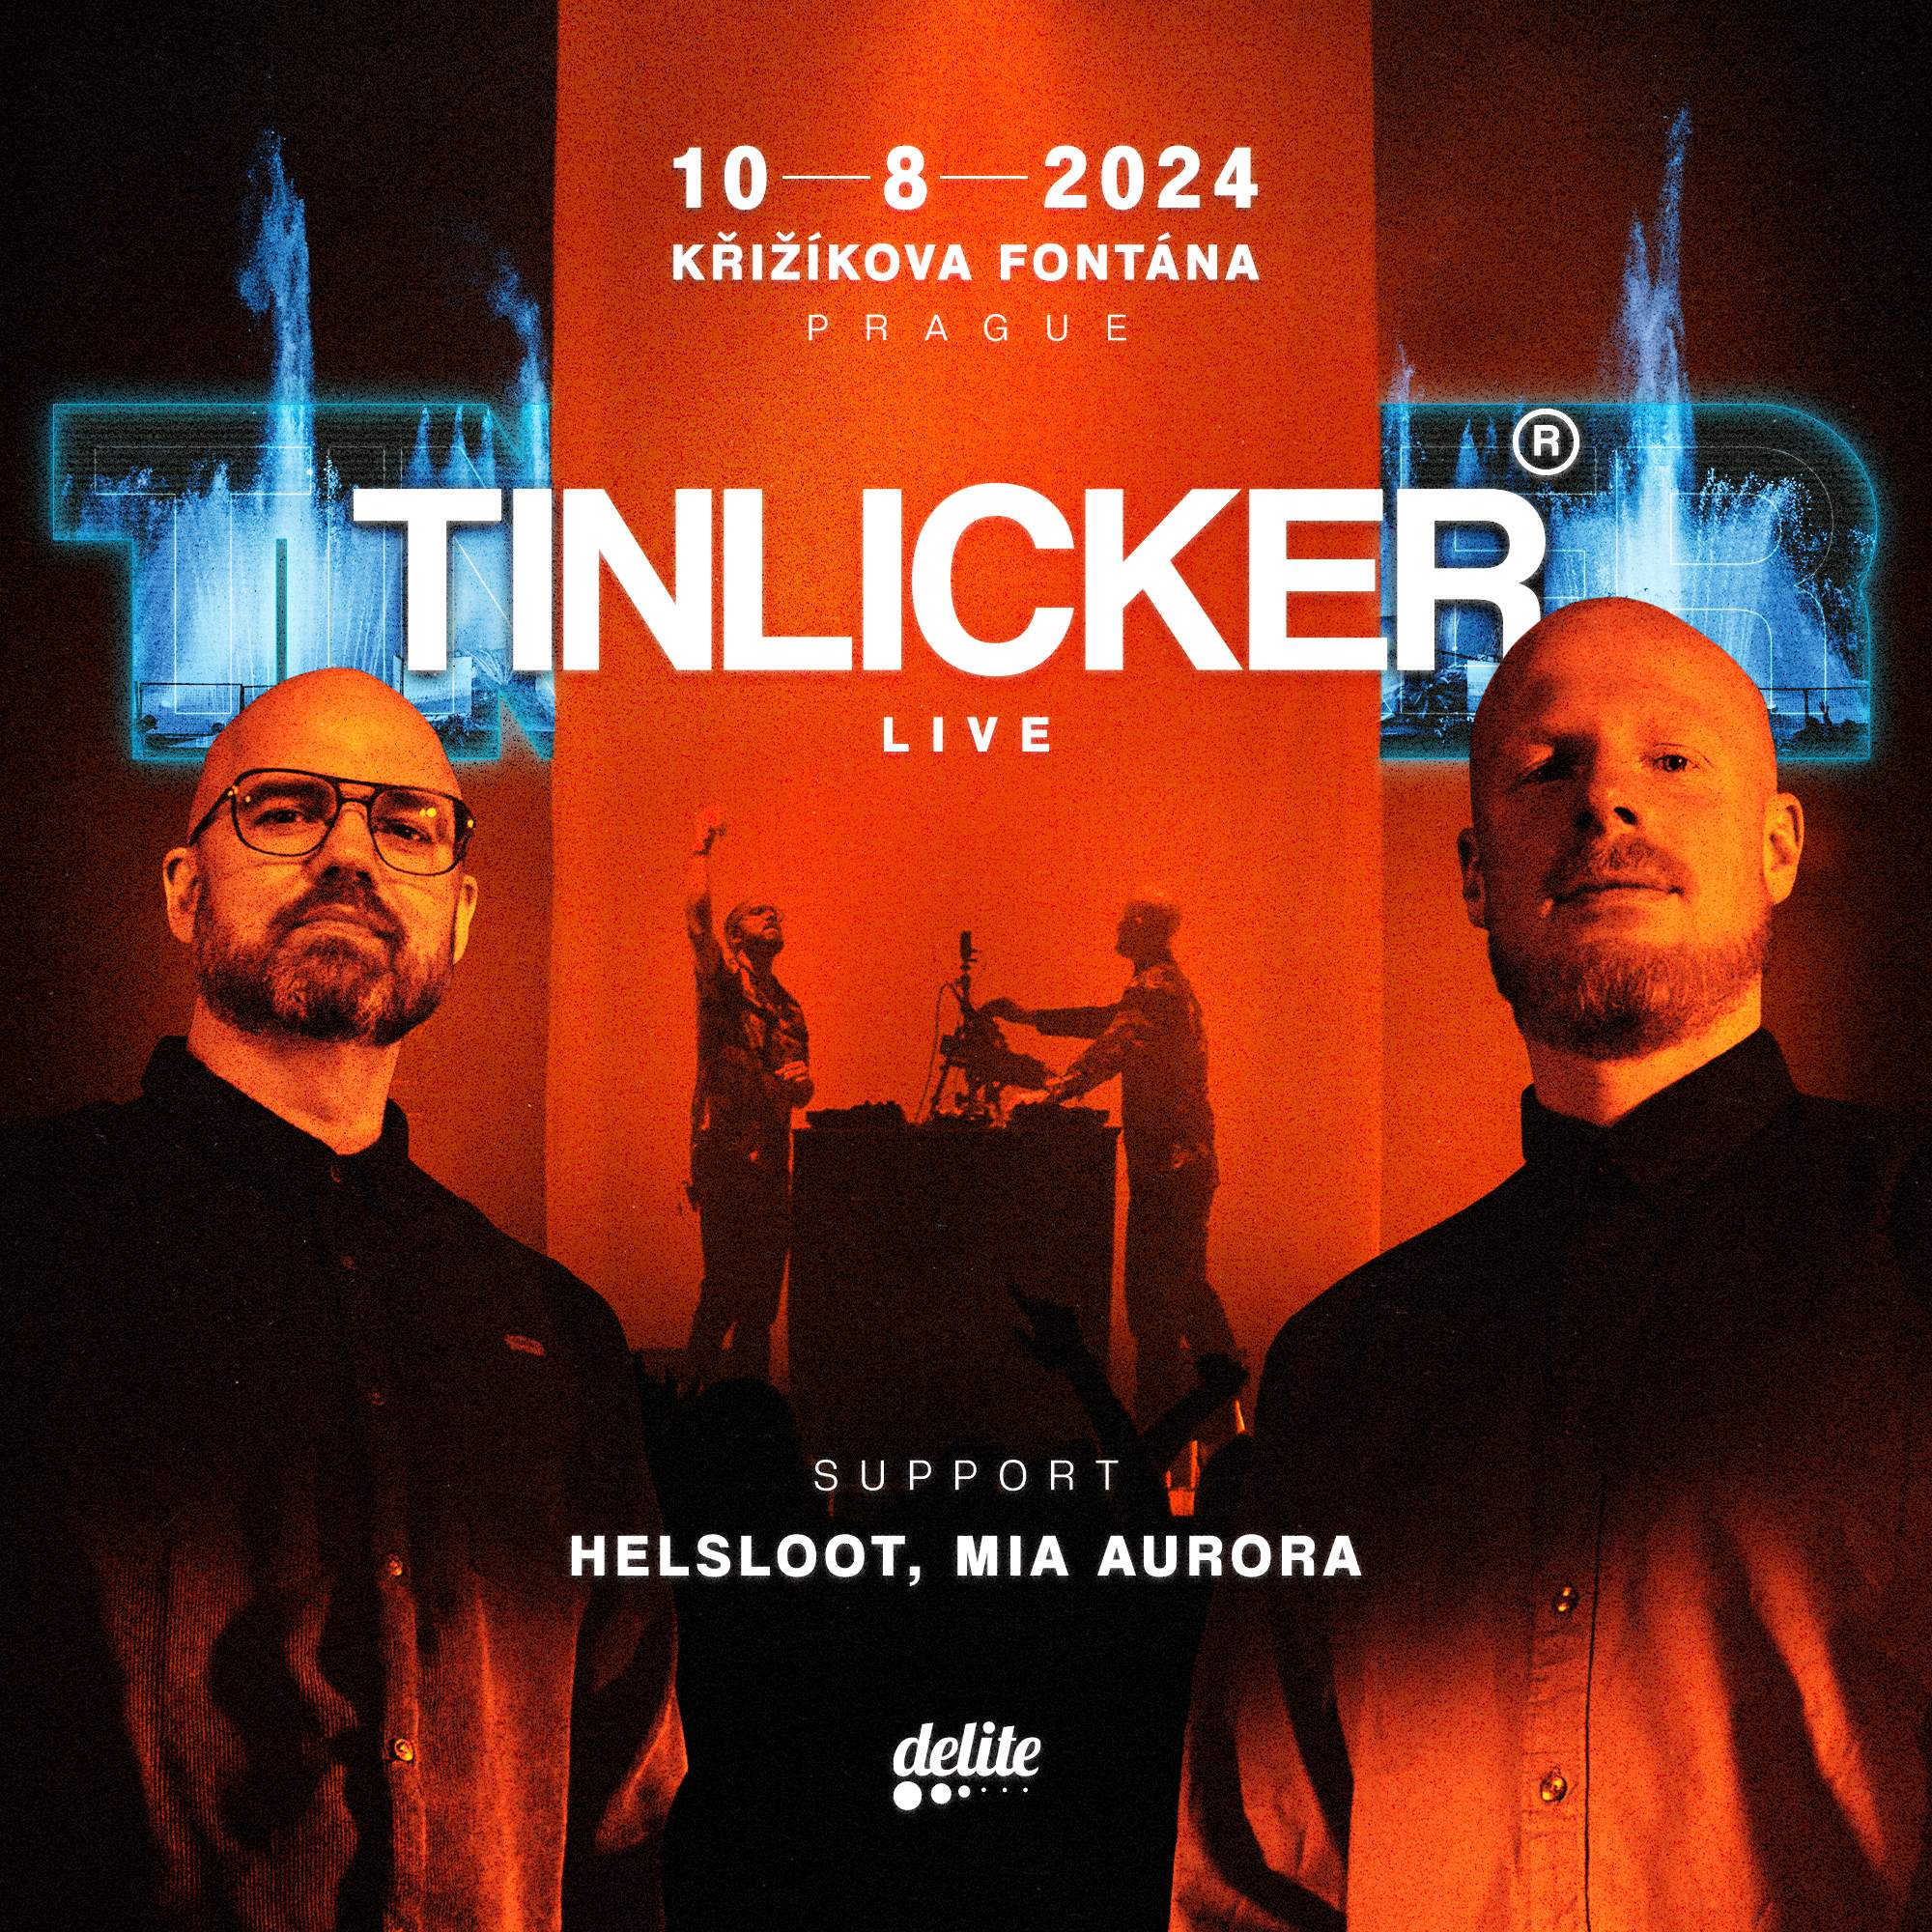 Tinlicker (live) - フライヤー表